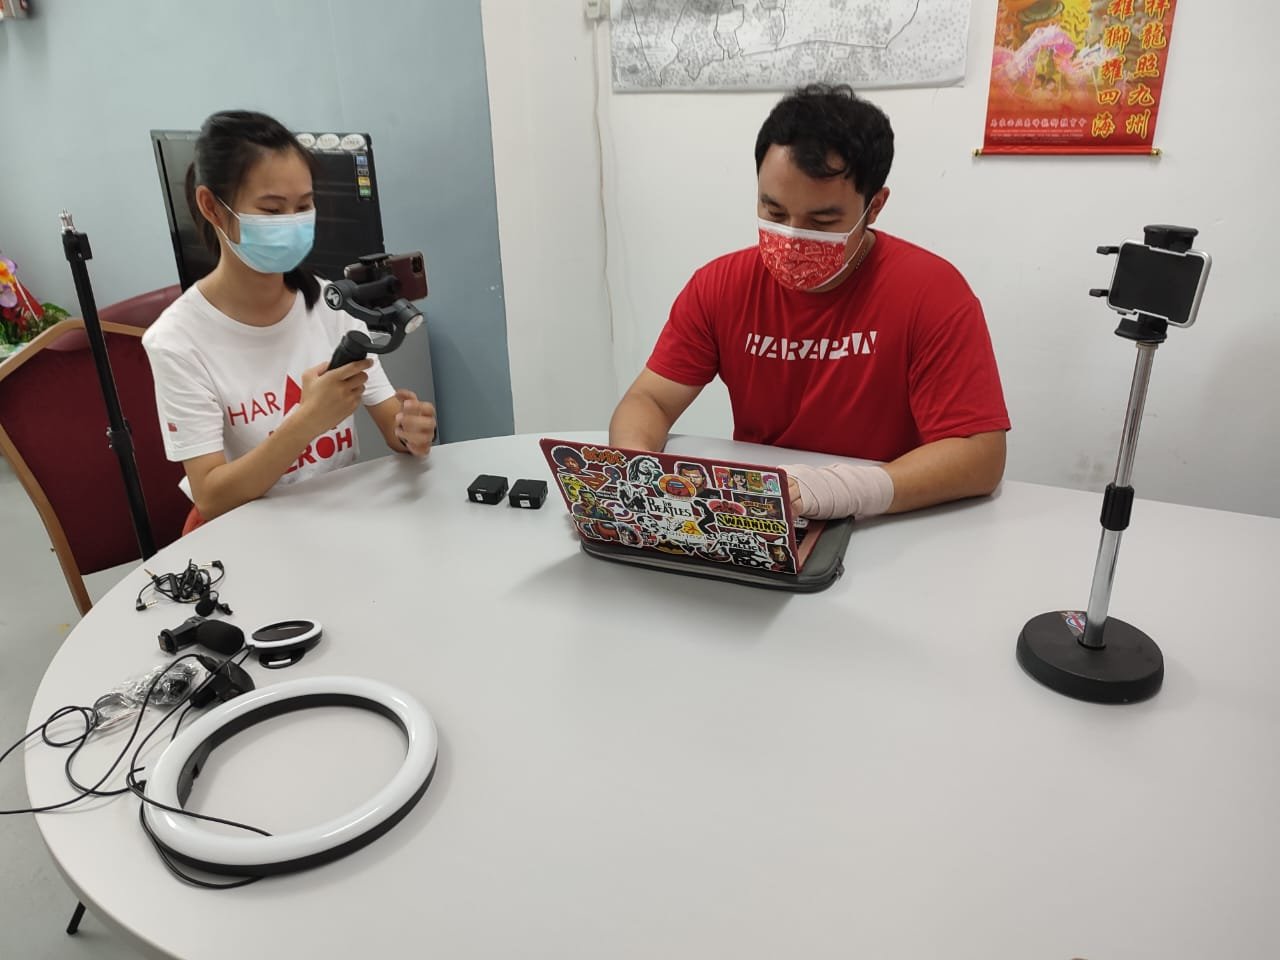 郭子毅（右）与负责管理其社交媒体的冯靖评讨论社媒文案内容，以及检查摄影器材。